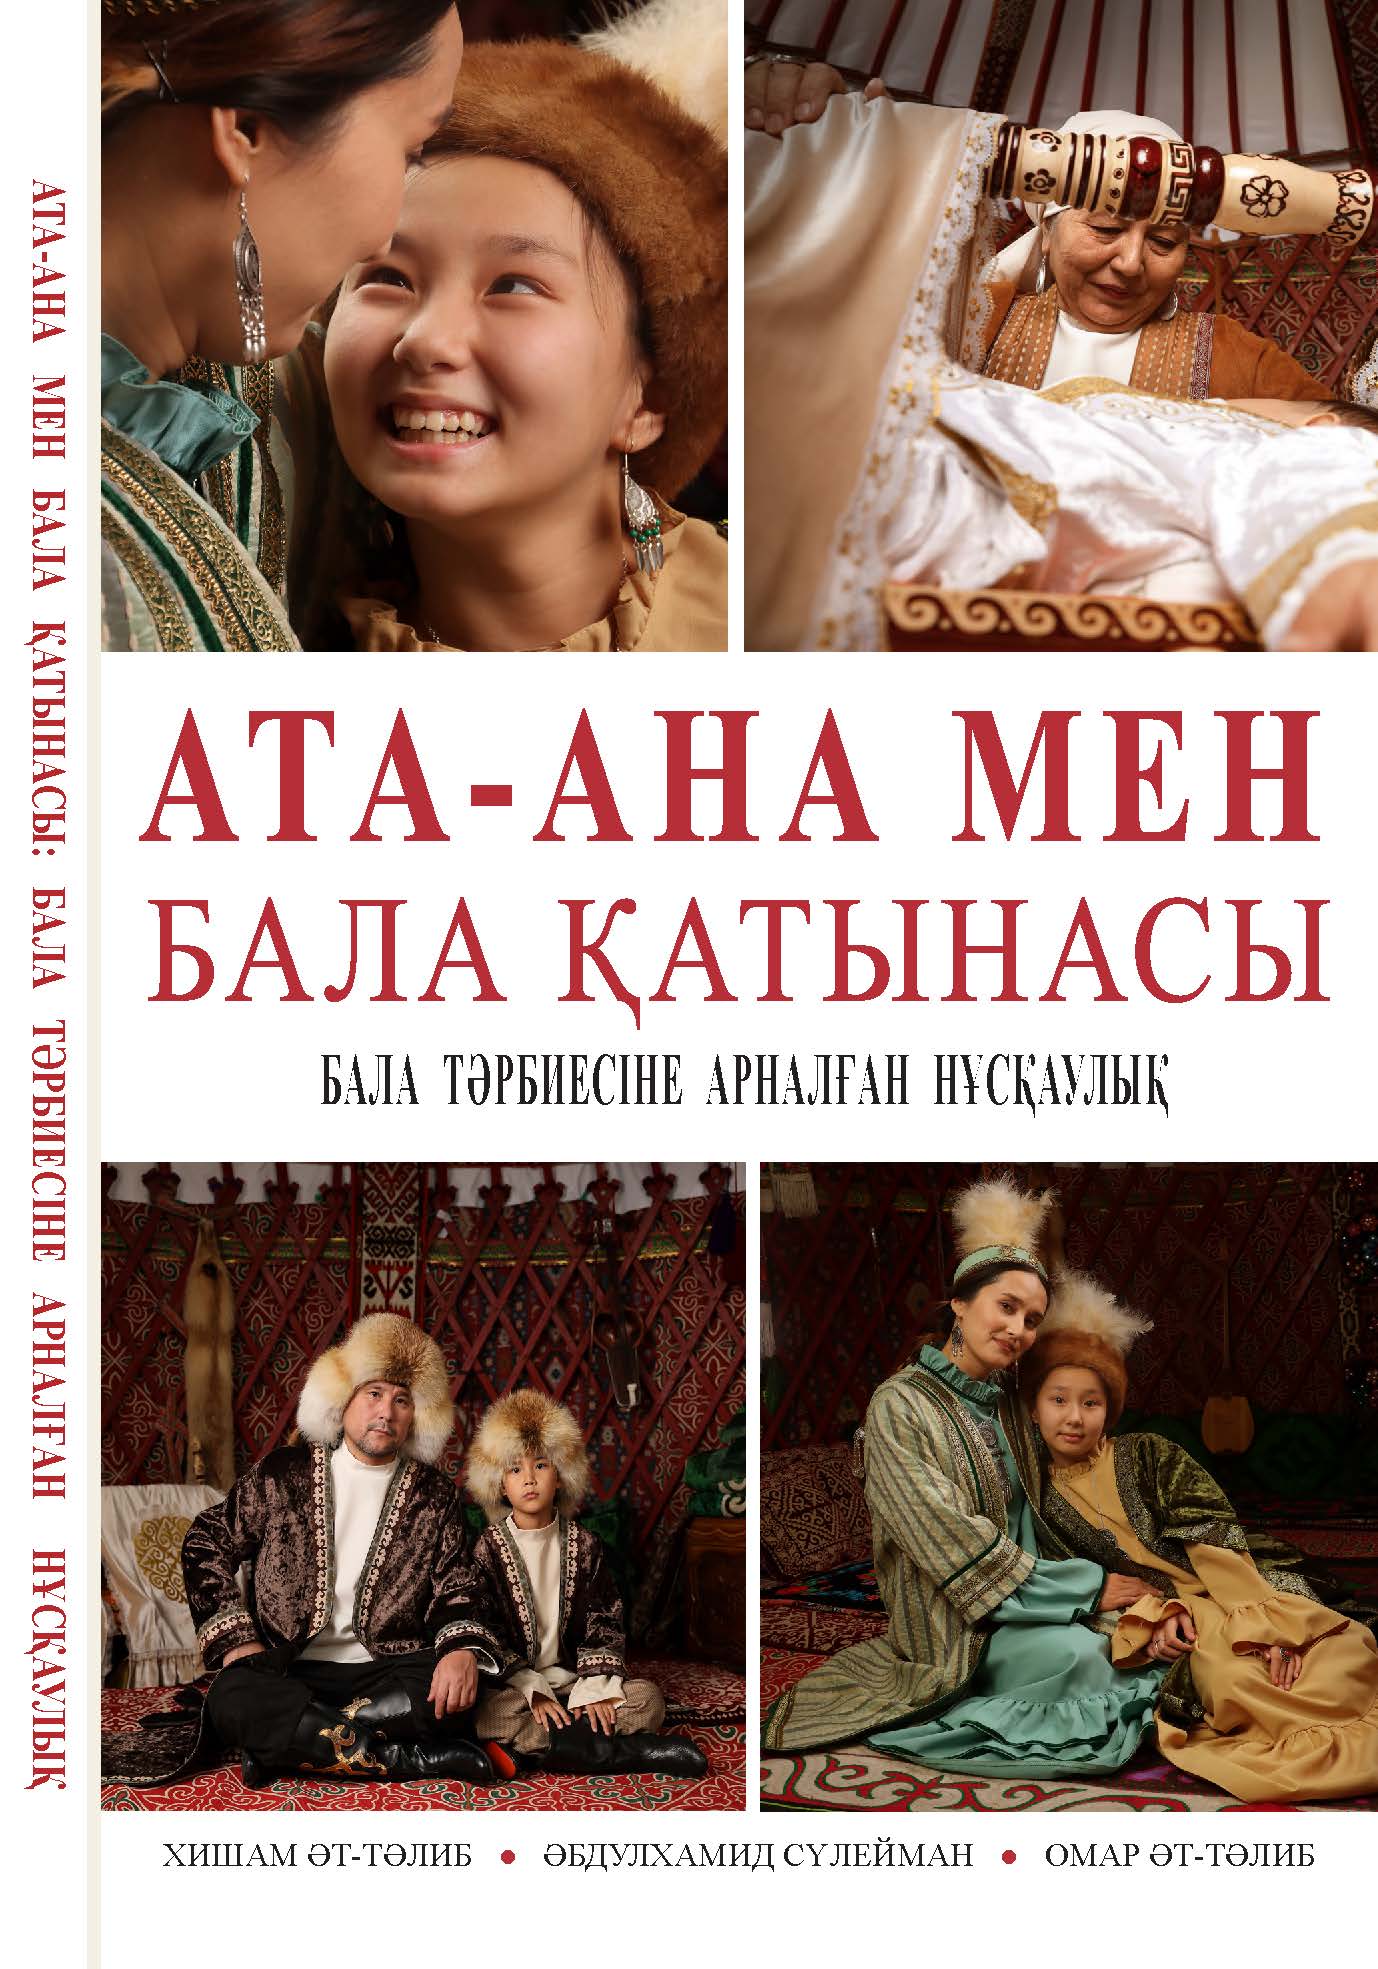 Kazakh: Ата-ана мен бала қатынасы: Бала тәрбиесіне арналған нұсқаулық (Parent-Child Relations: A Guide to Raising Children)